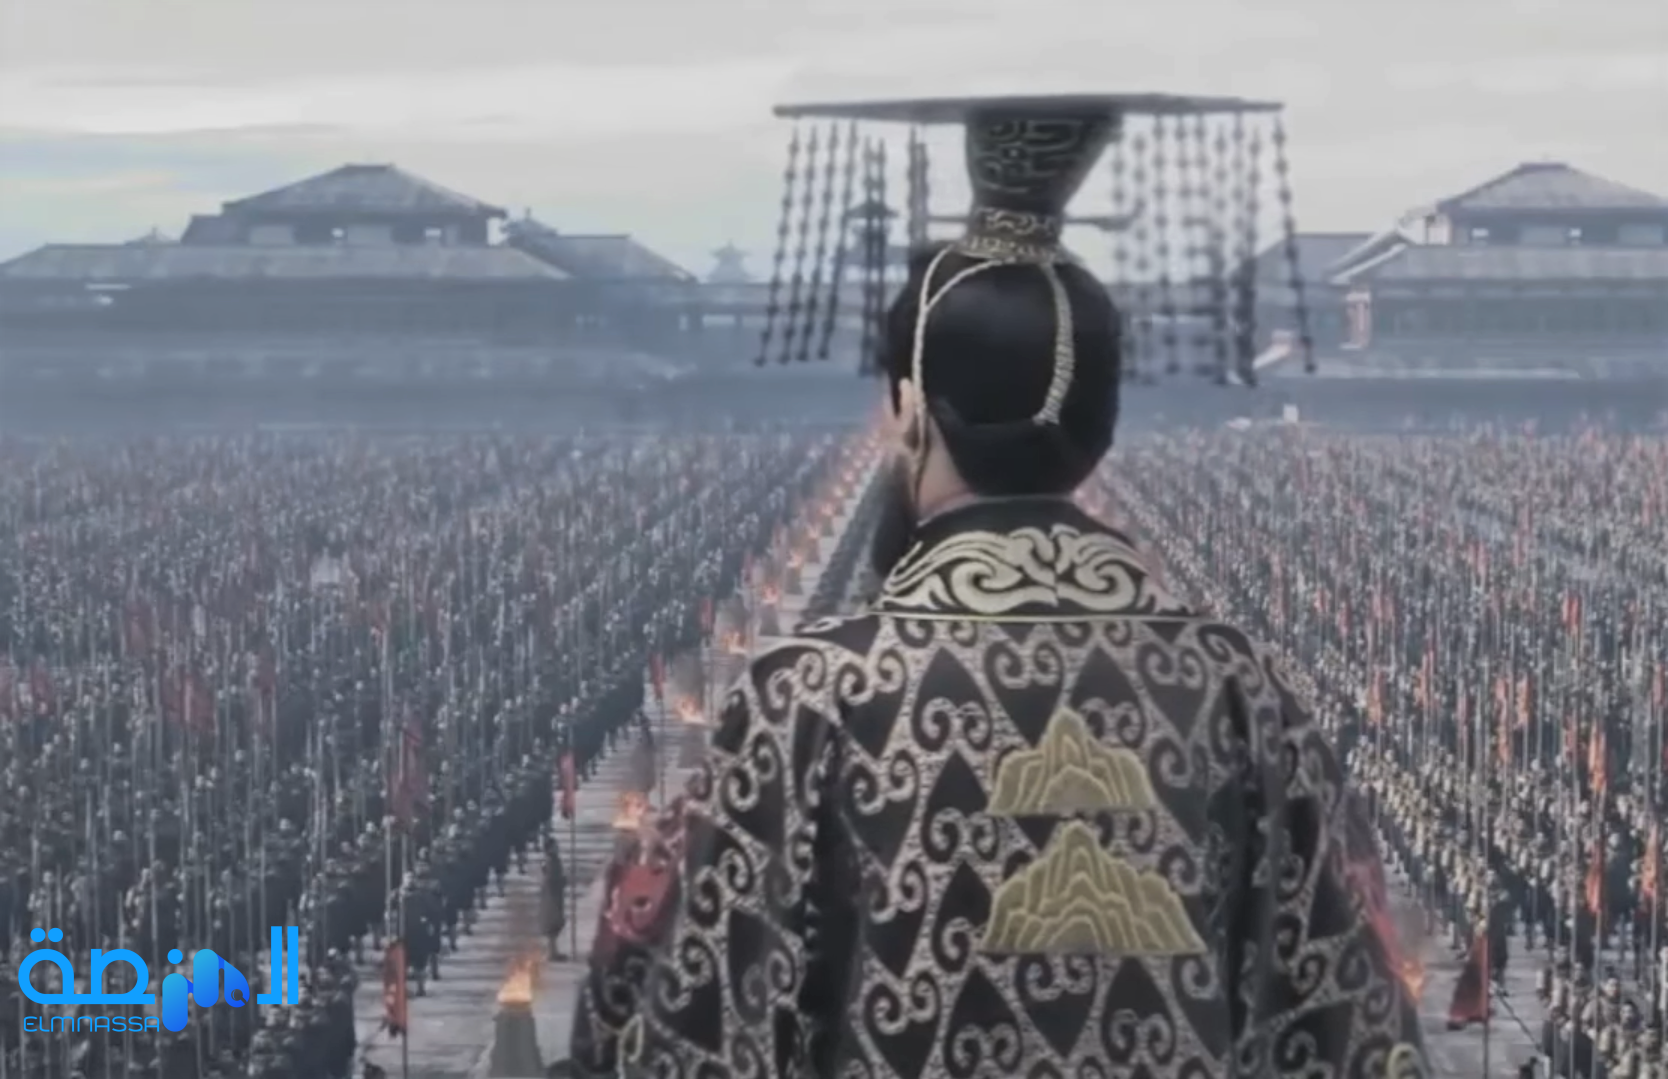 الامبراطور تشين هوانج صاحب سور الصين العظيم